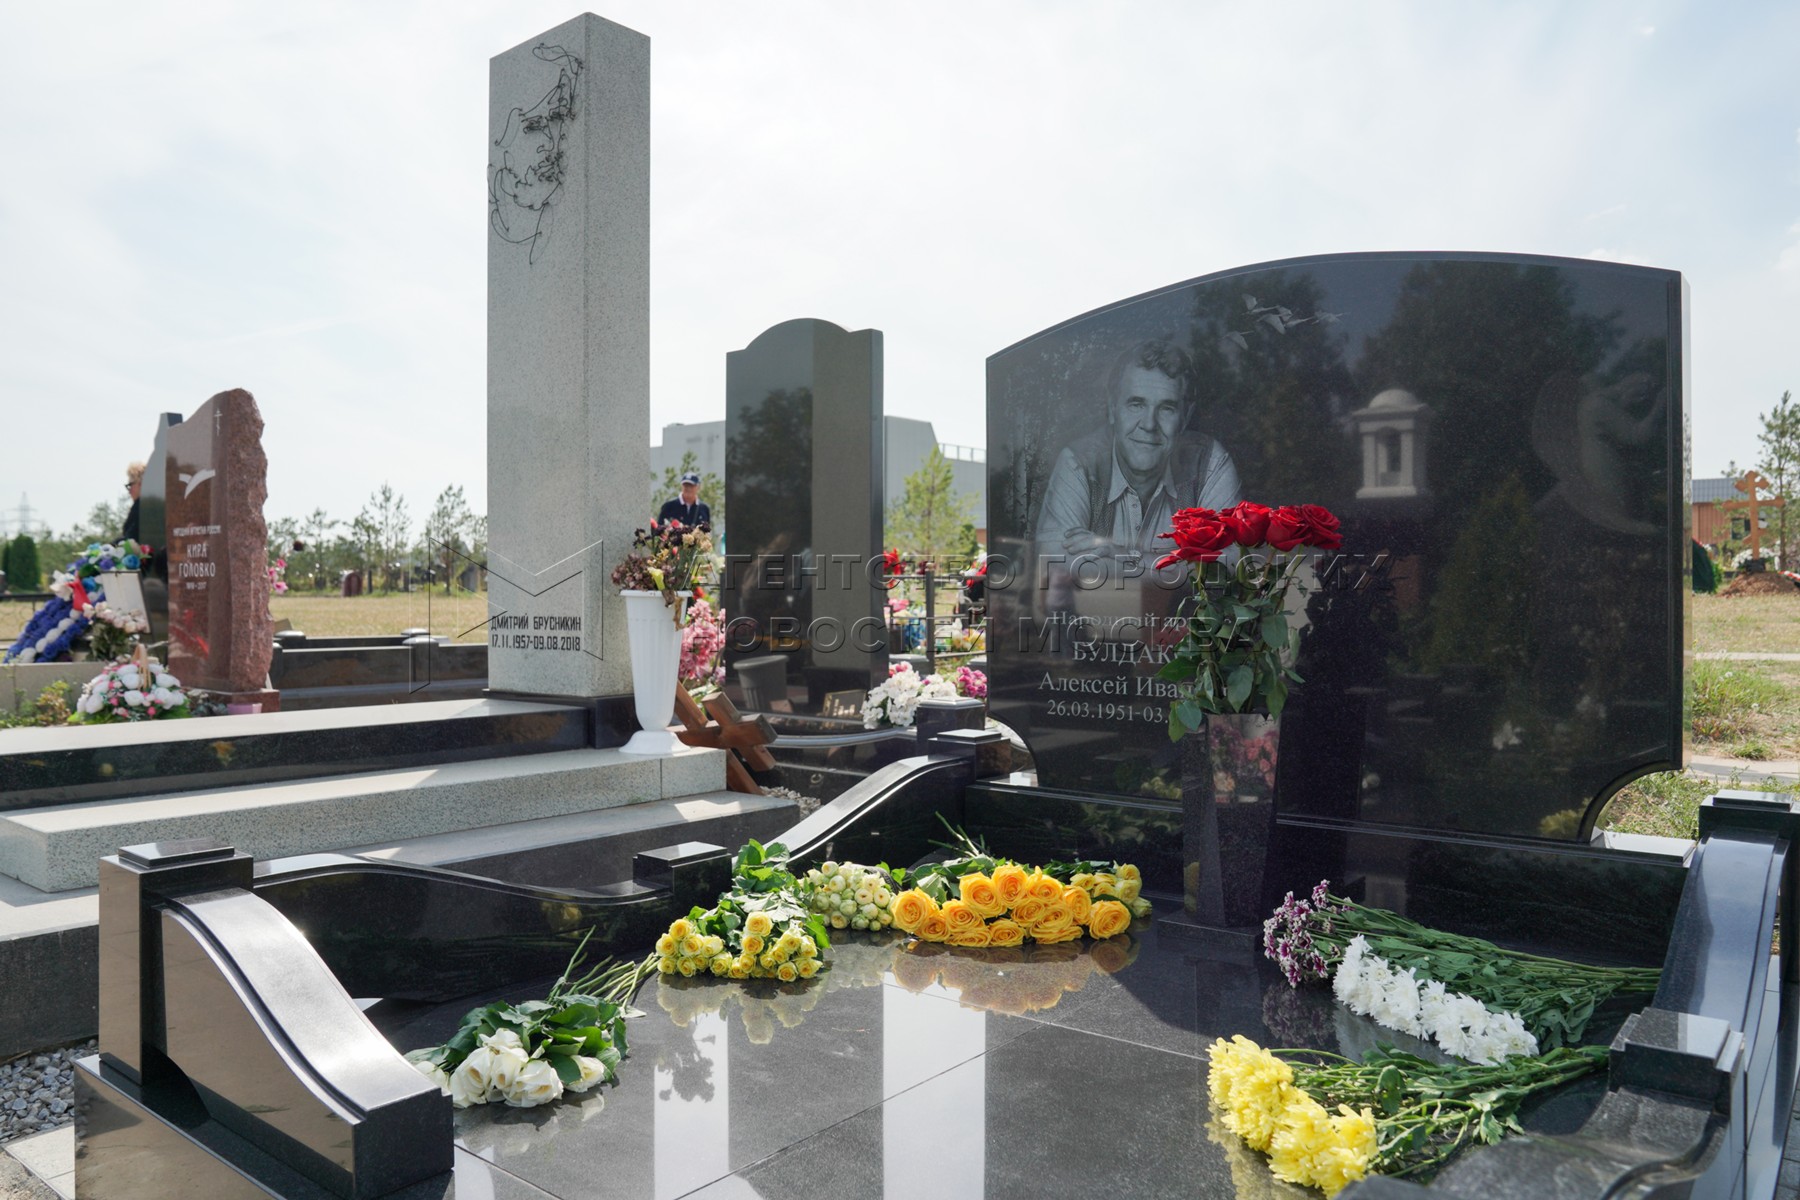 Могила мягкова на троекуровском кладбище фото сегодня сейчас